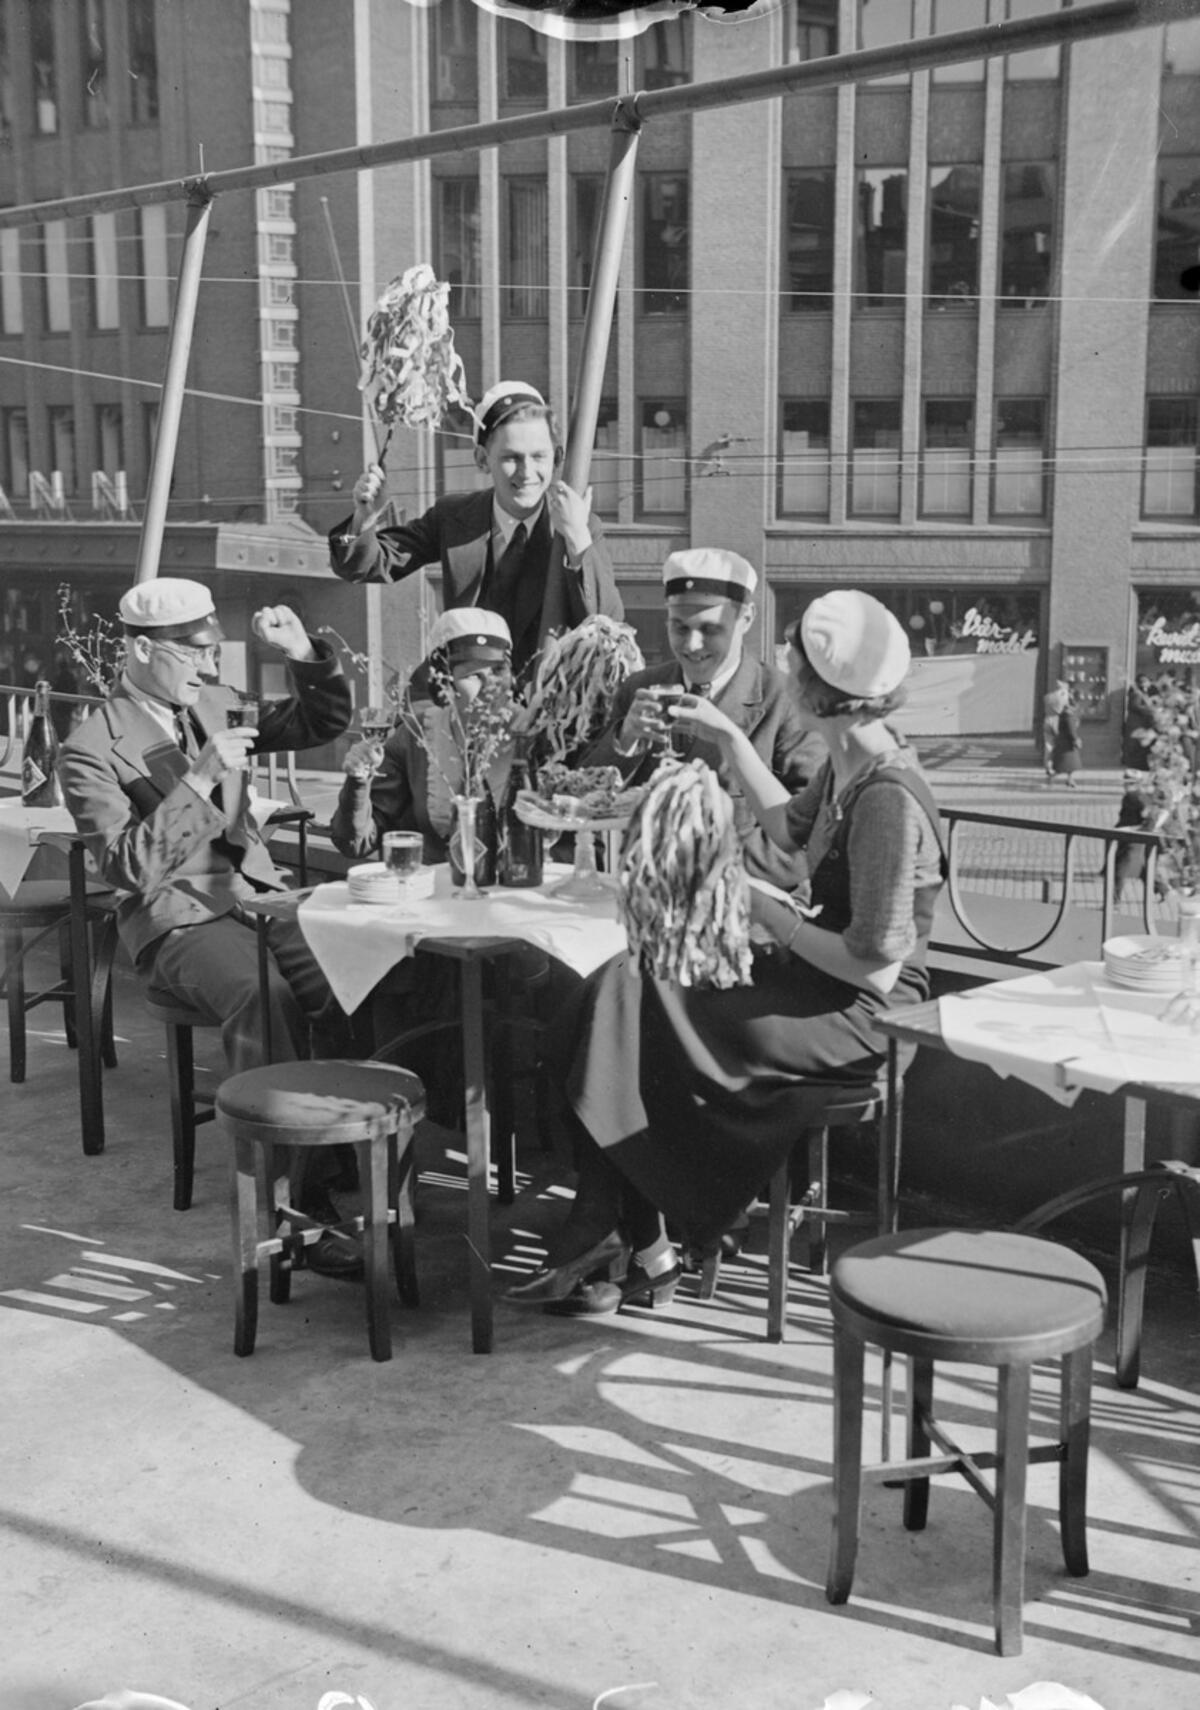 Ravintolat ja niiden terassit ovat olennainen osa urbaania vappua. Tässä ylioppilaat juhlivat Vanhan ylioppilastalon terassilla vappuna 1933. Kuvaaja: Museovirasto / Pietinen